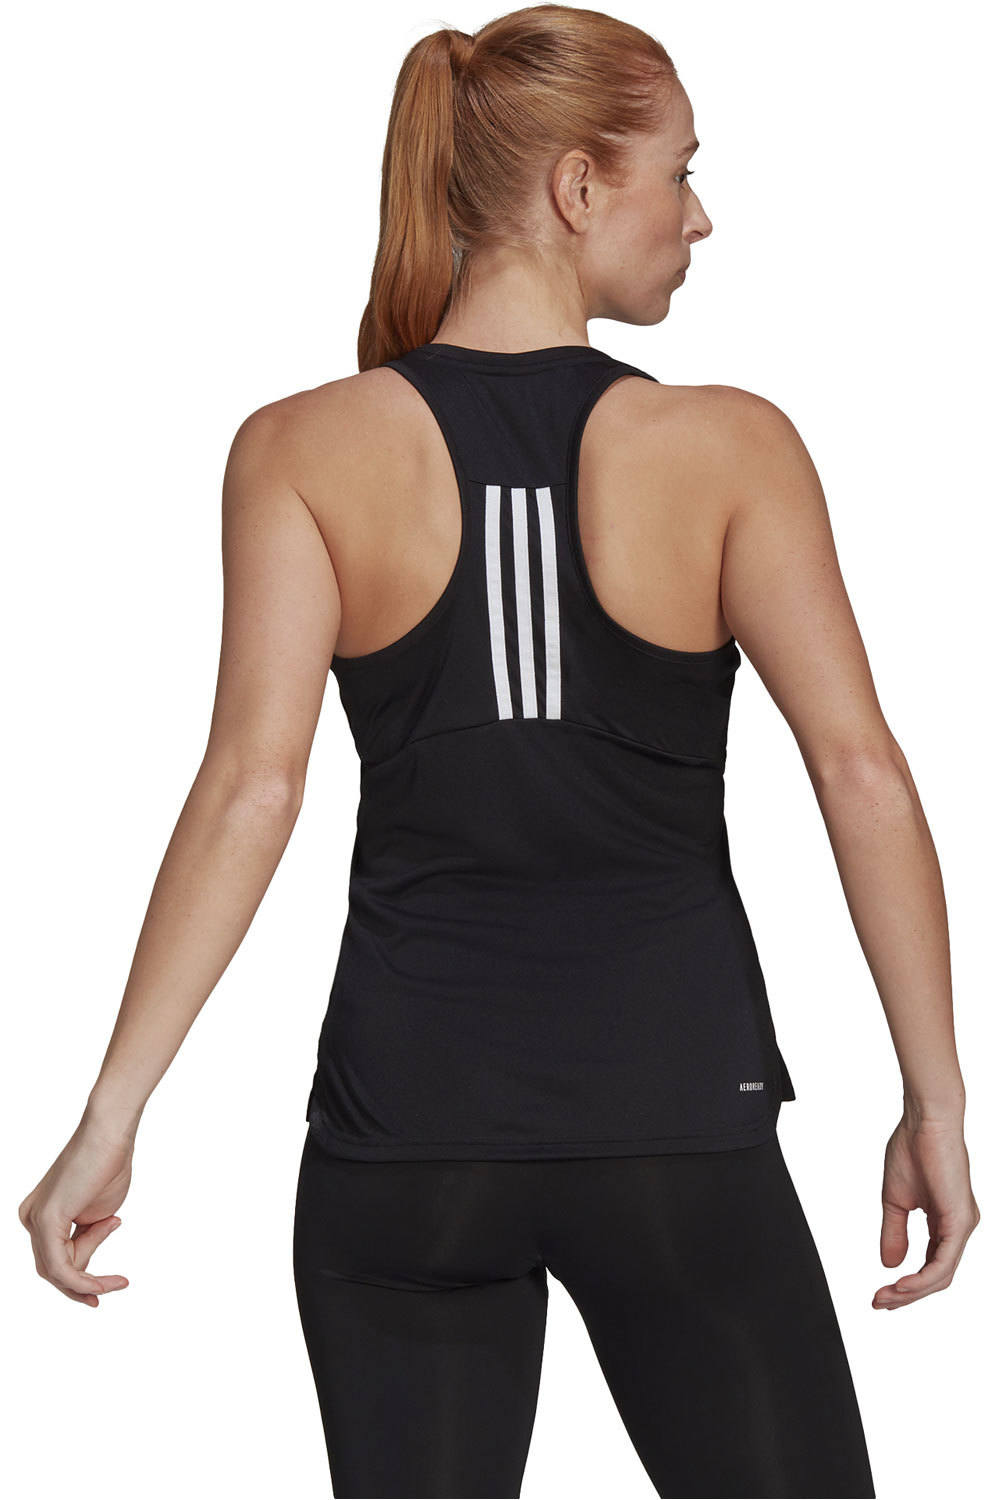 adidas camiseta tirantes fitness mujer Primeblue Designed 2 Move Sport 3 bandas (de tirantes) vista trasera